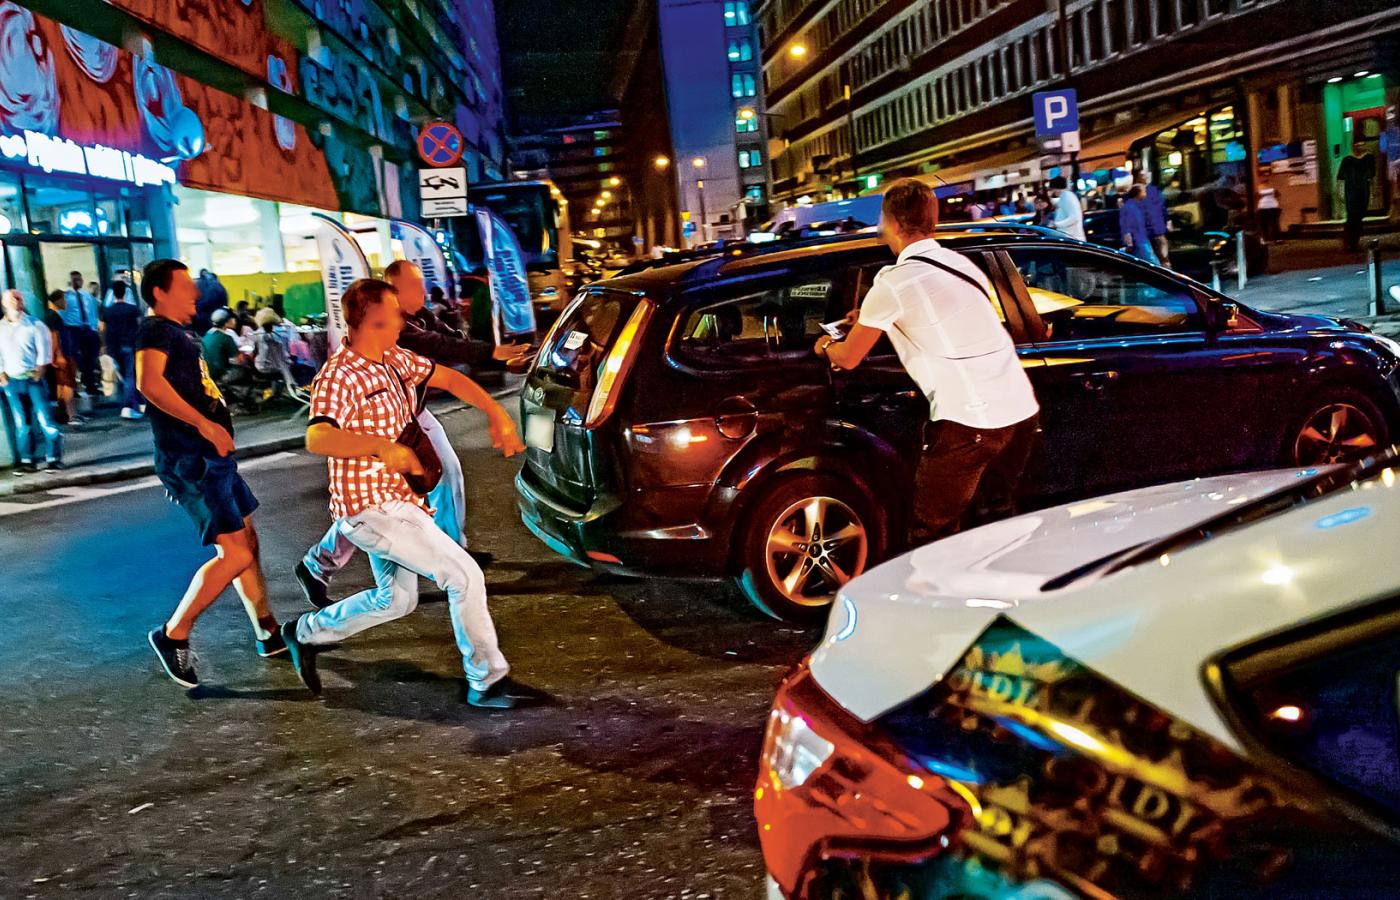 Warszawscy taksówkarze oklejają wlepkami samochody przewoźników Ubera.